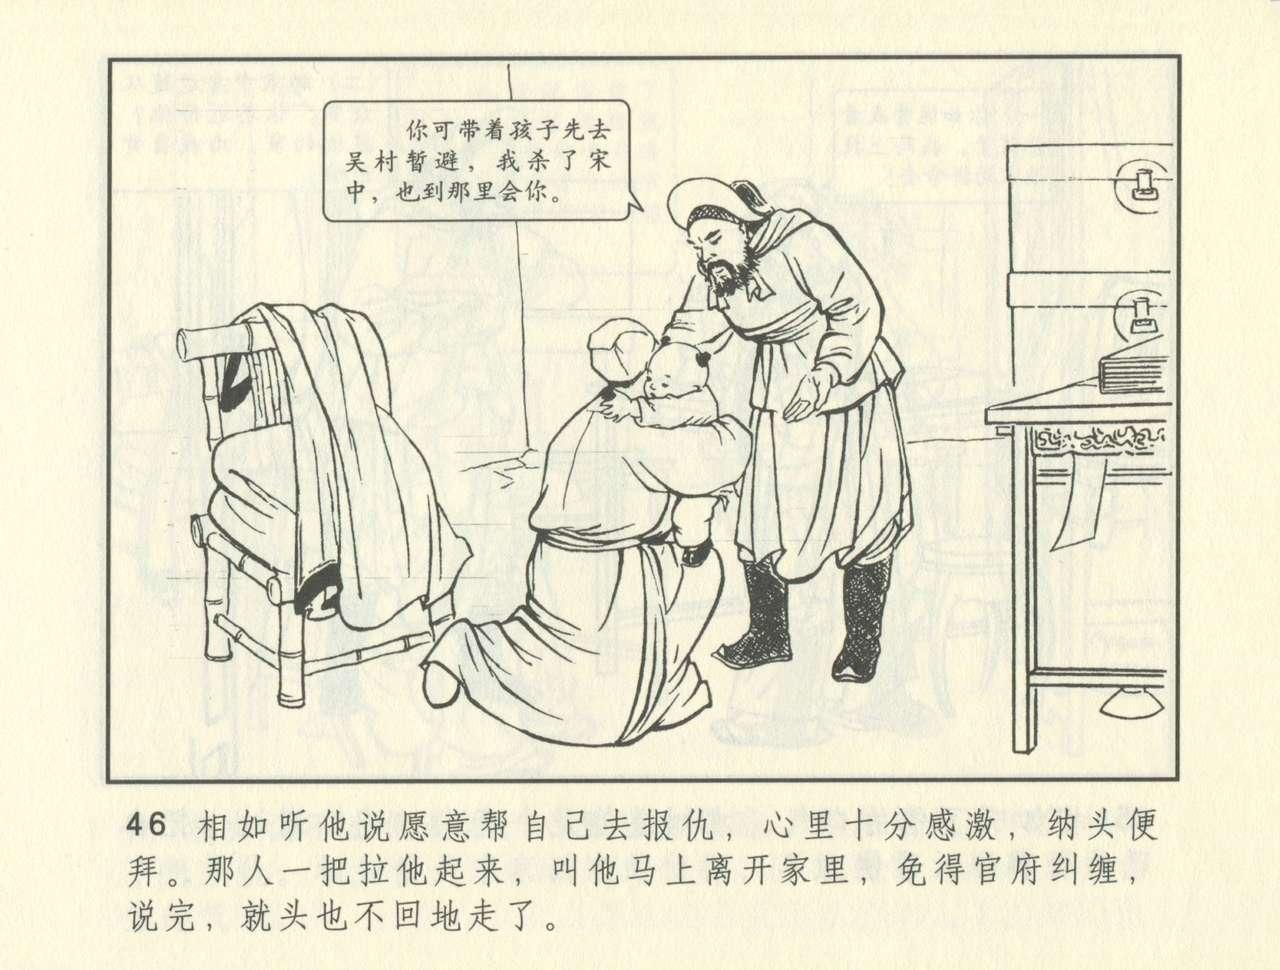 聊斋志异 张玮等绘 天津人民美术出版社 卷二十一 ~ 三十 386